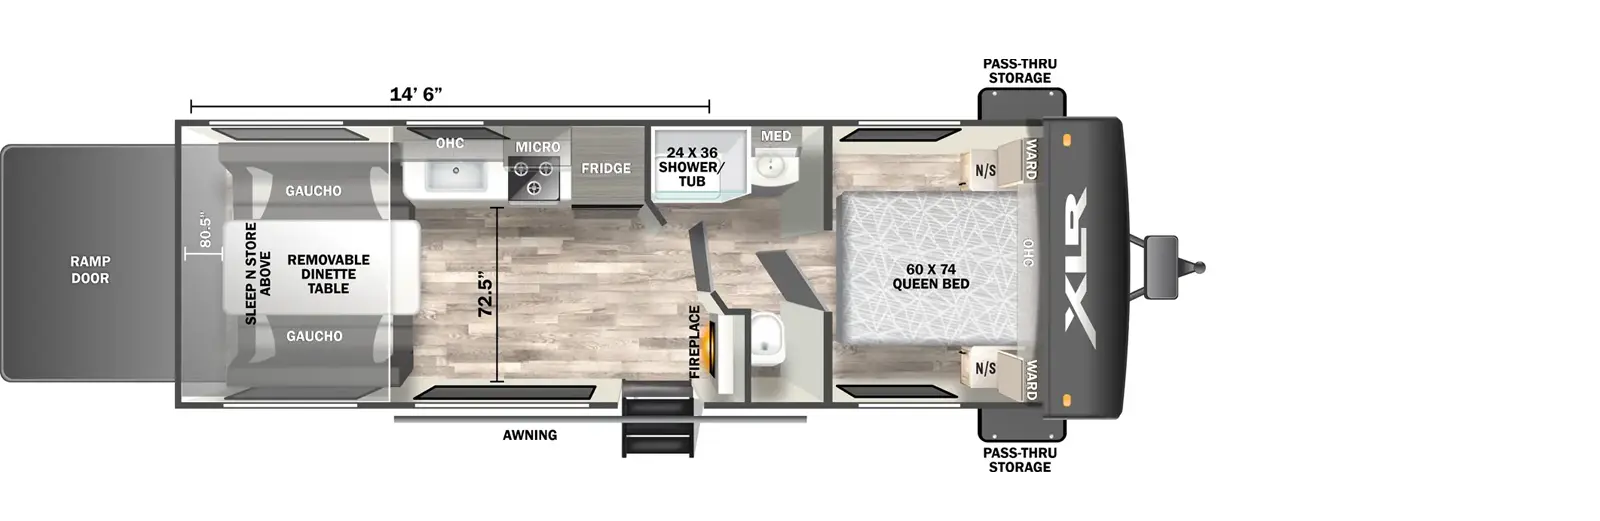 24LE Floorplan Image